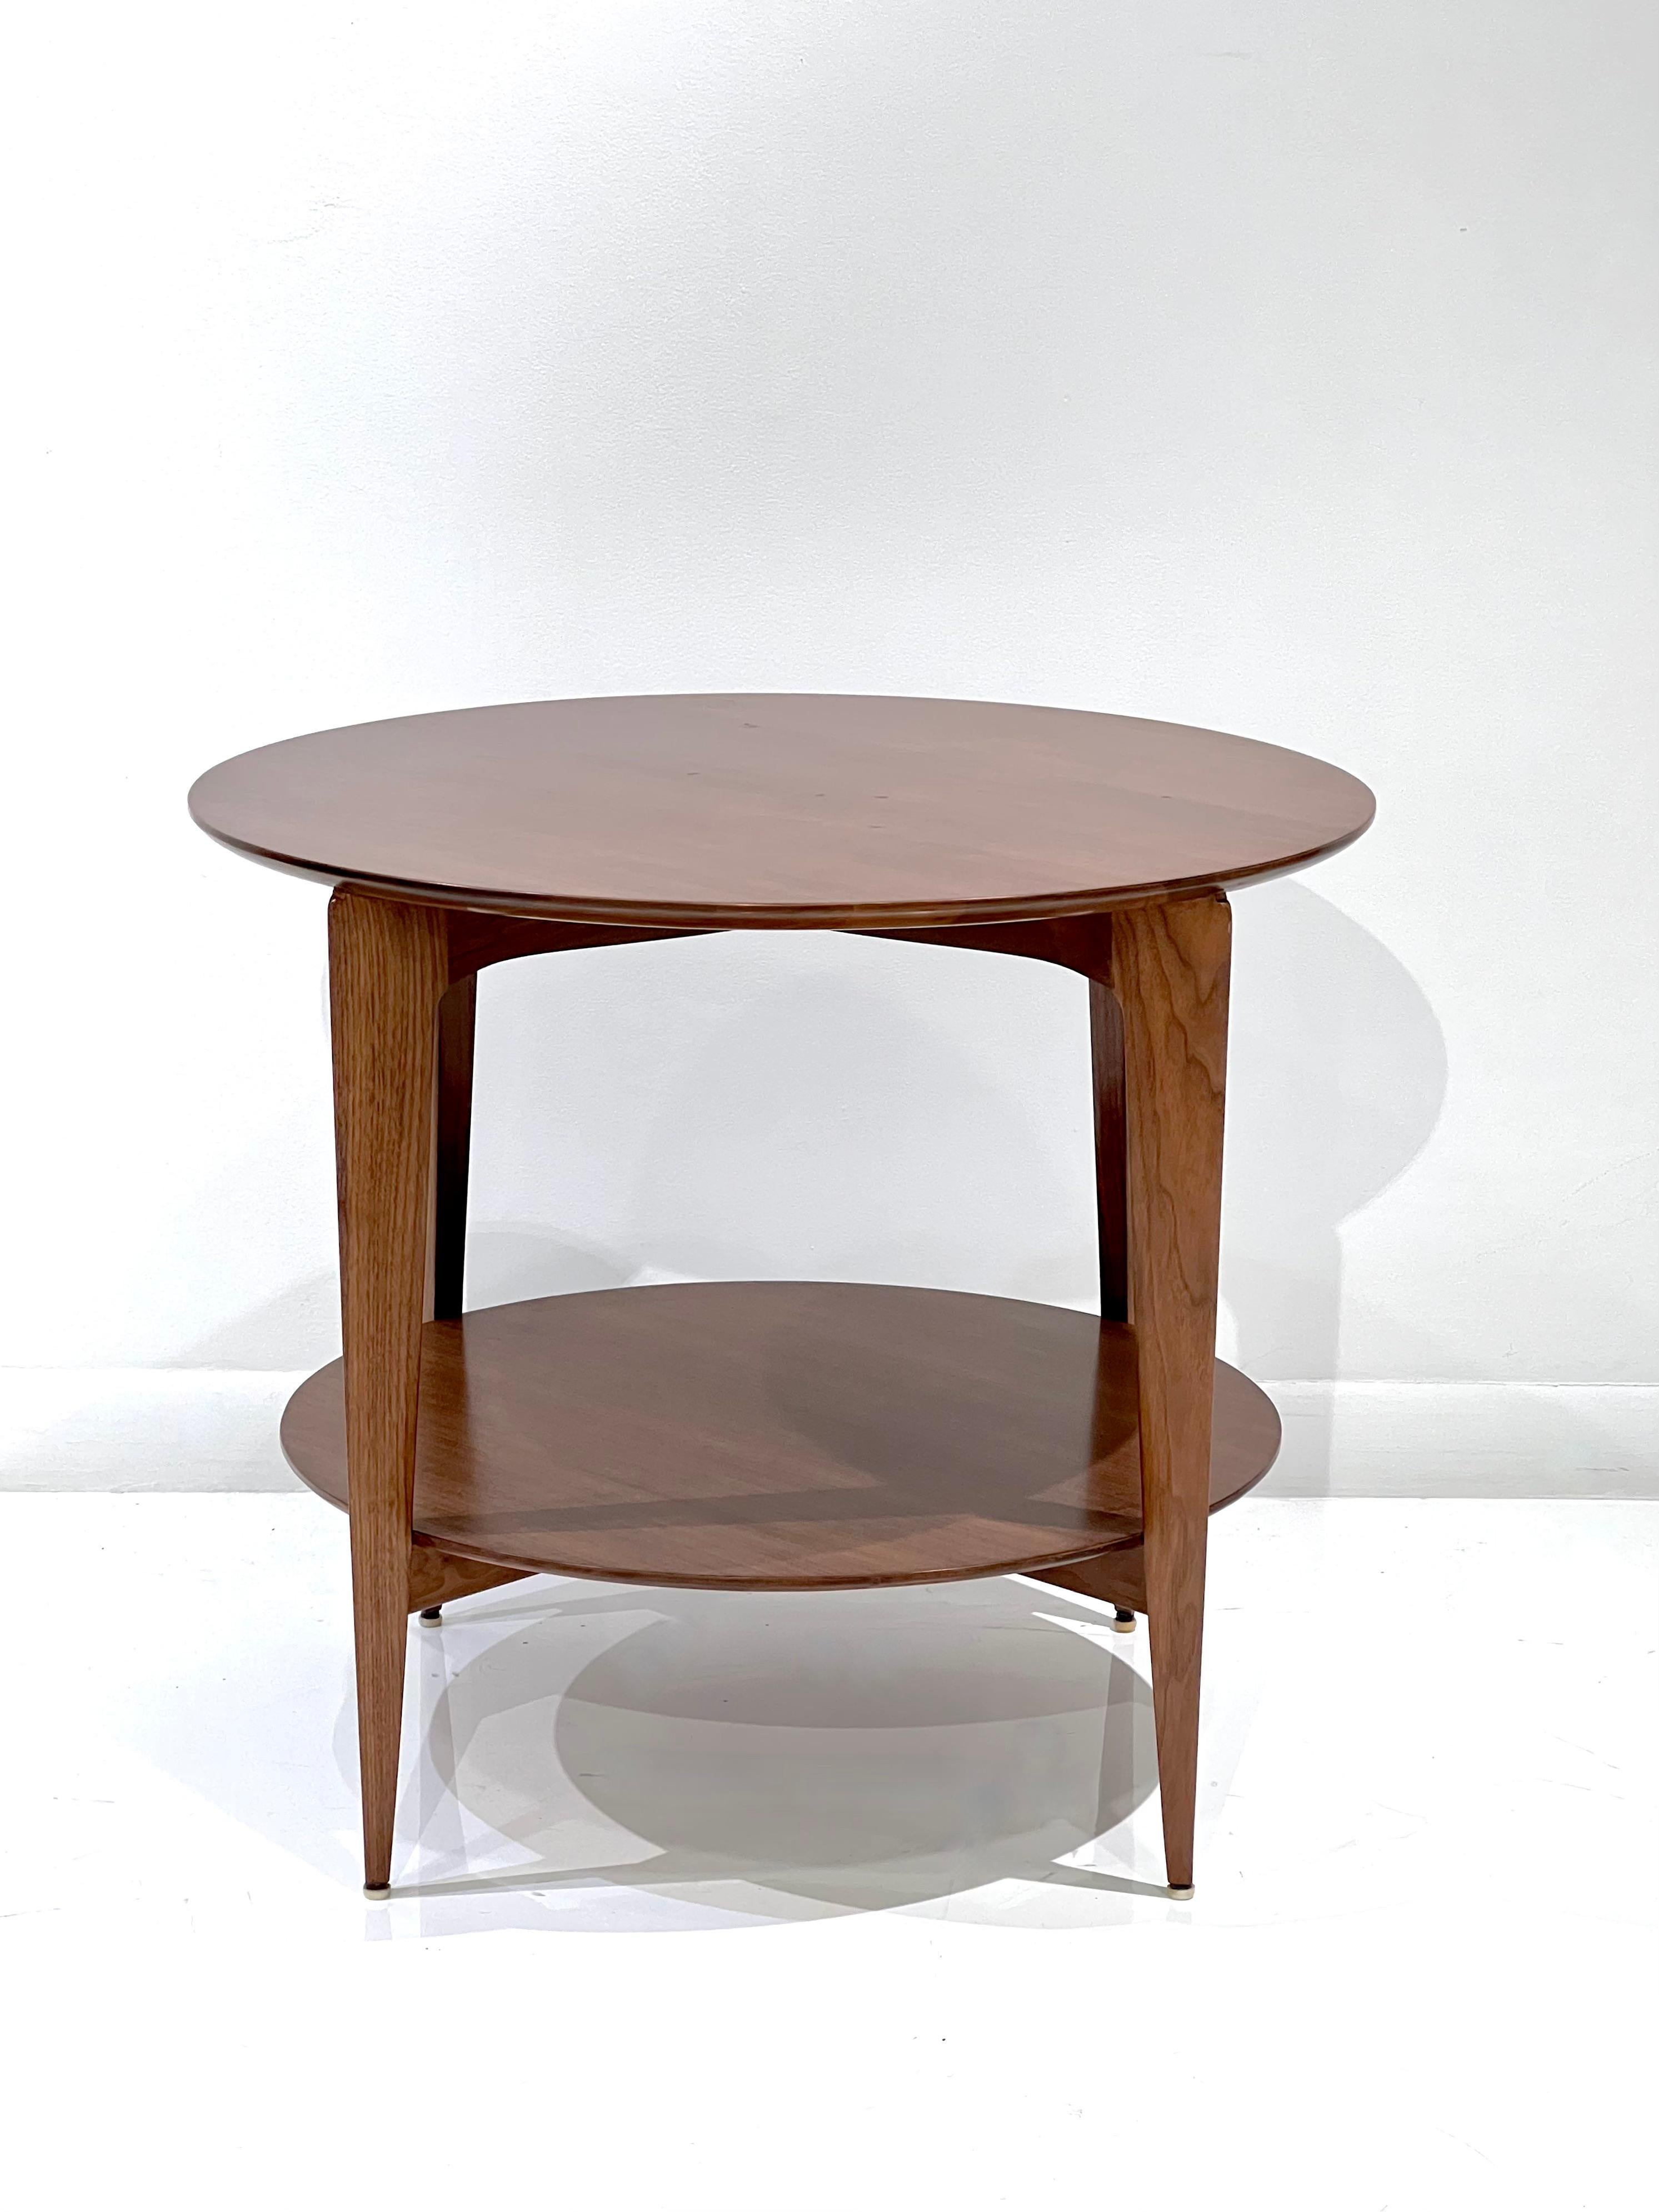 Table d'appoint à deux niveaux de Gio Ponti pour Singer & Sons, fabriquée en Italie dans les années 1950. Magnifiquement refini dans un riche noyer brun moyen.